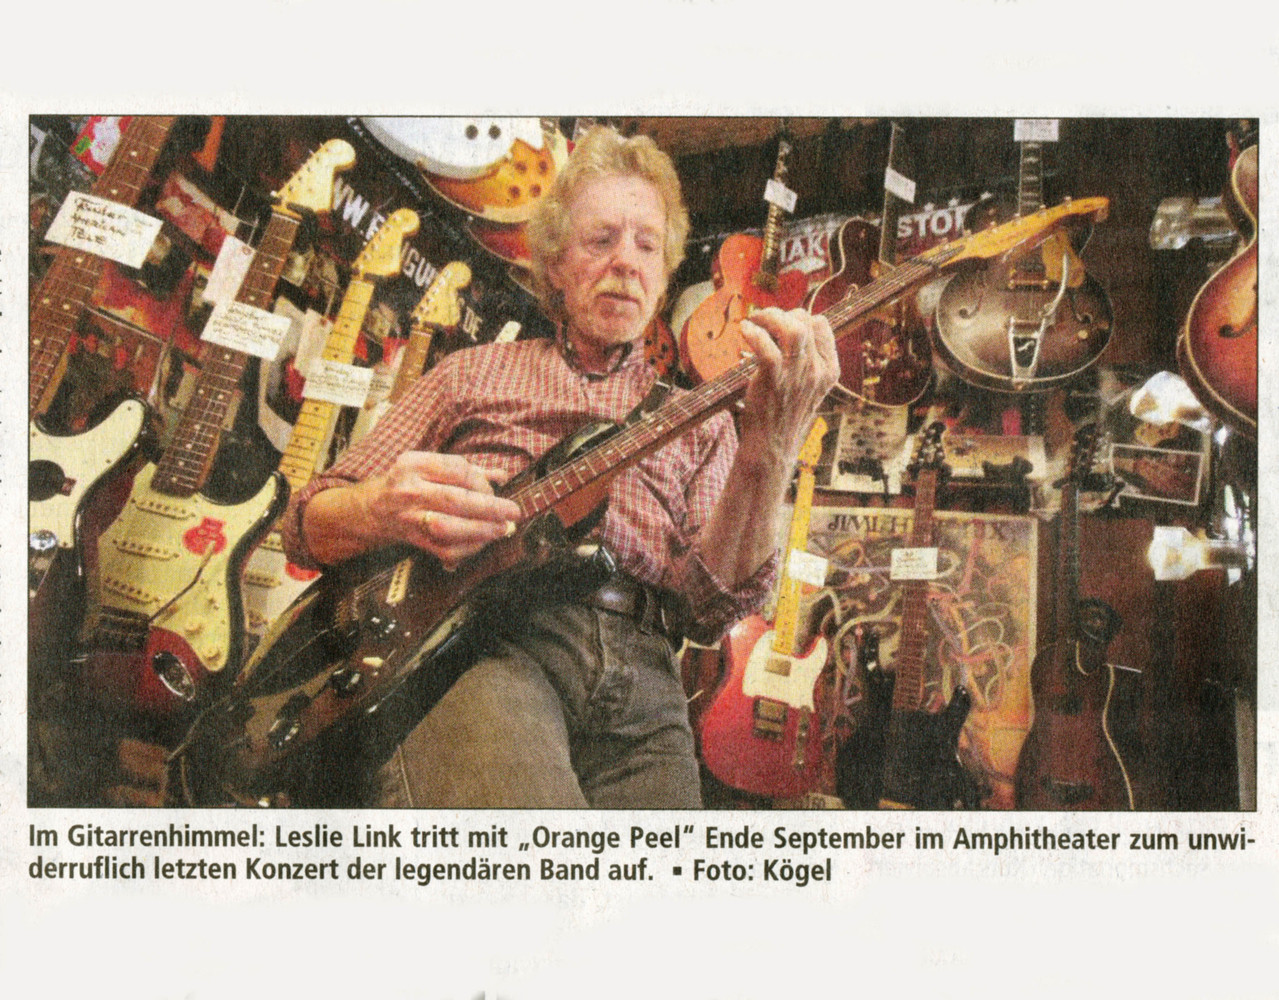 Offenbach Post, 14. September 2013 (Bild)